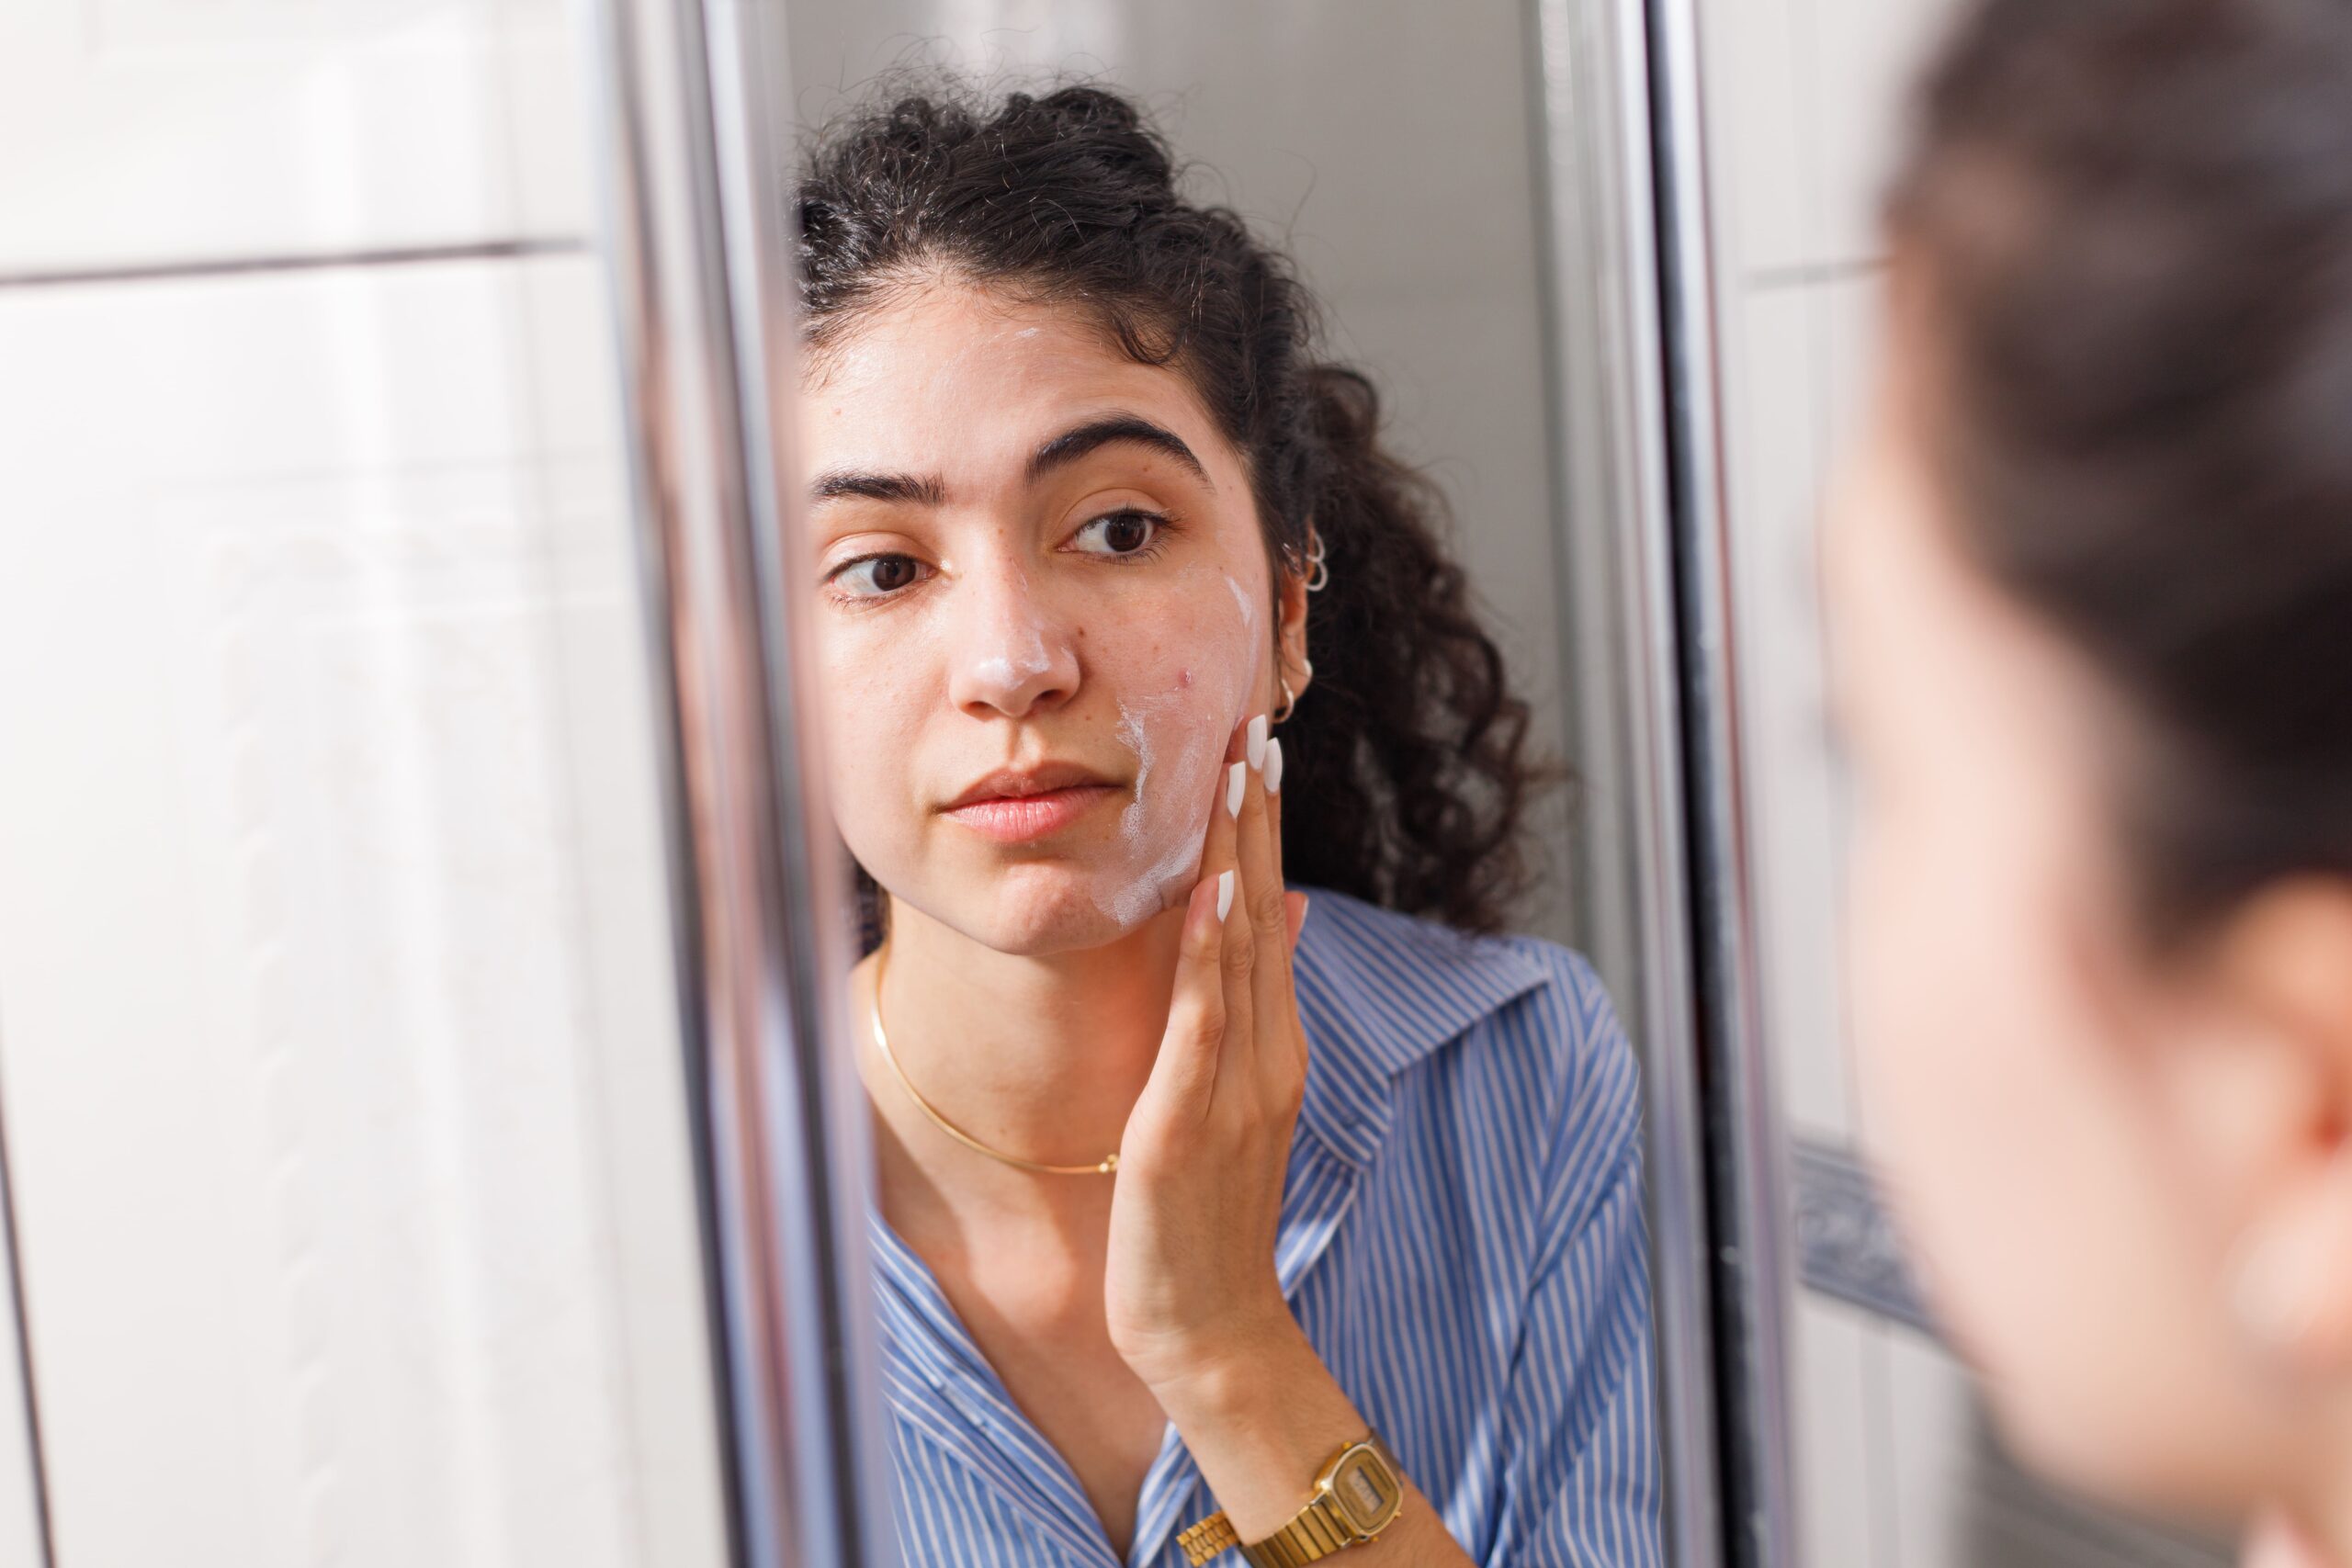 Mitos e verdades sobre pele oleosa: o que realmente funciona?